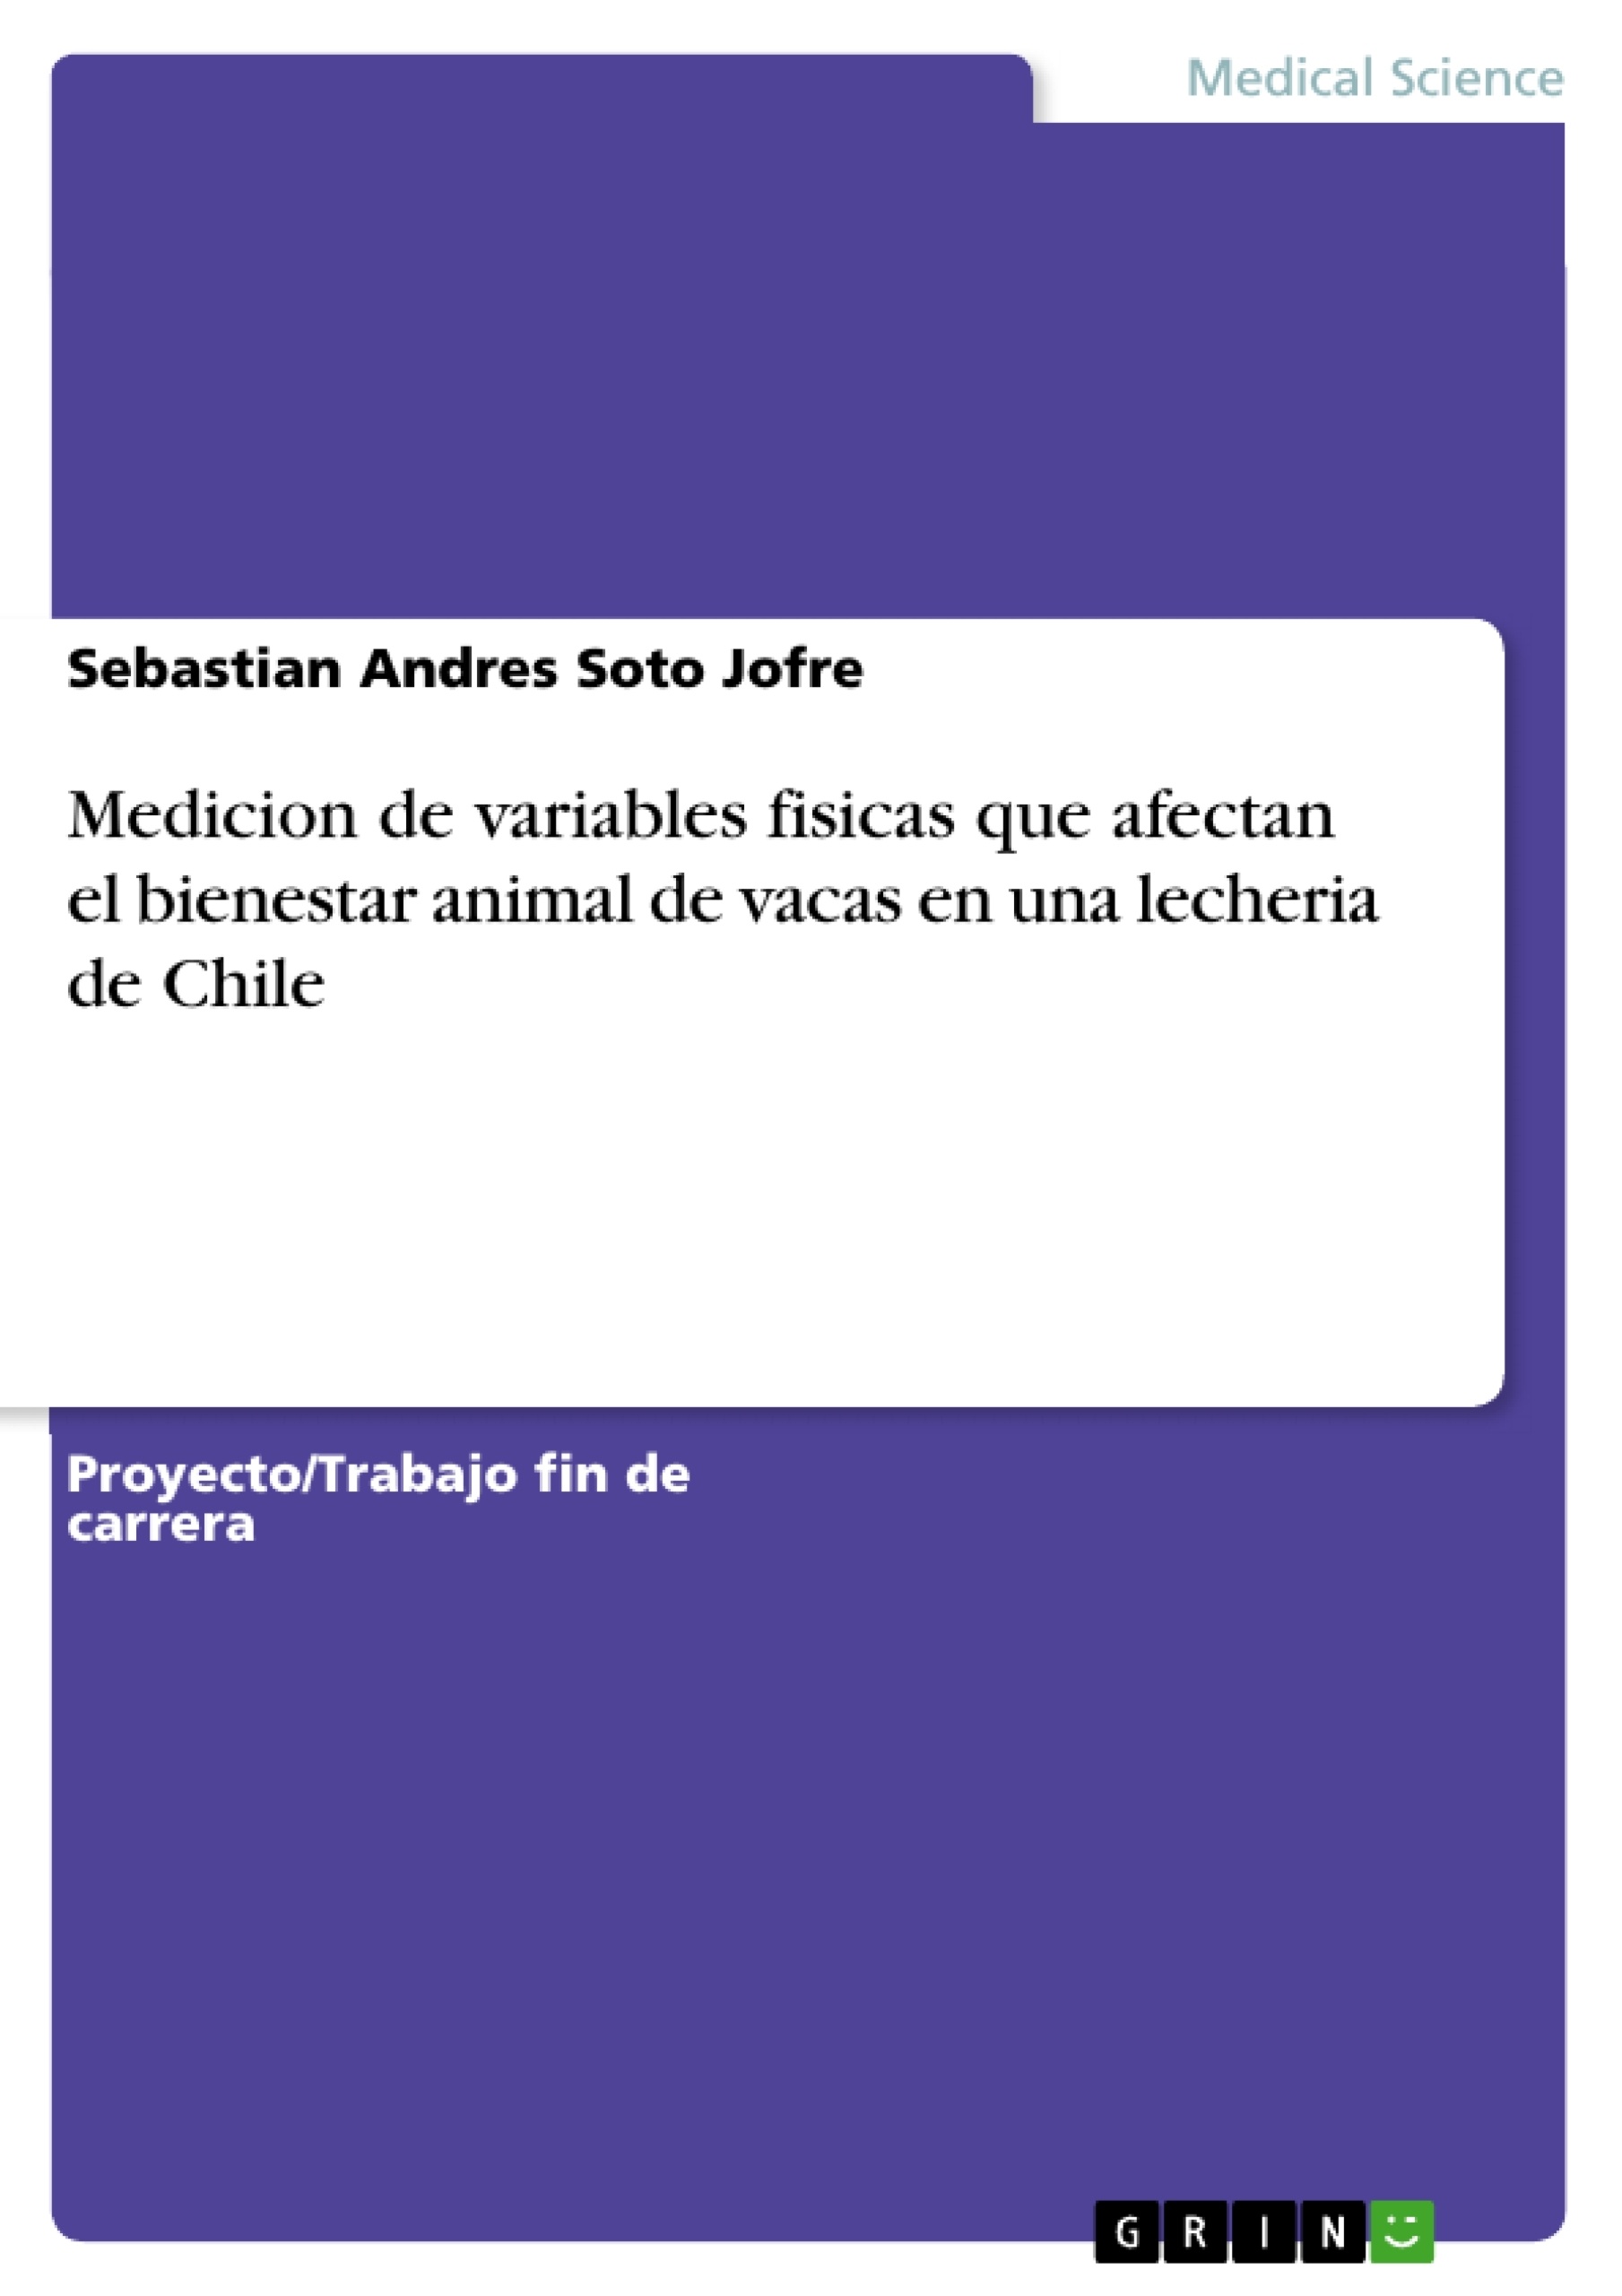 Titel: Medicion de variables fisicas que afectan el bienestar animal de vacas en una lecheria de Chile